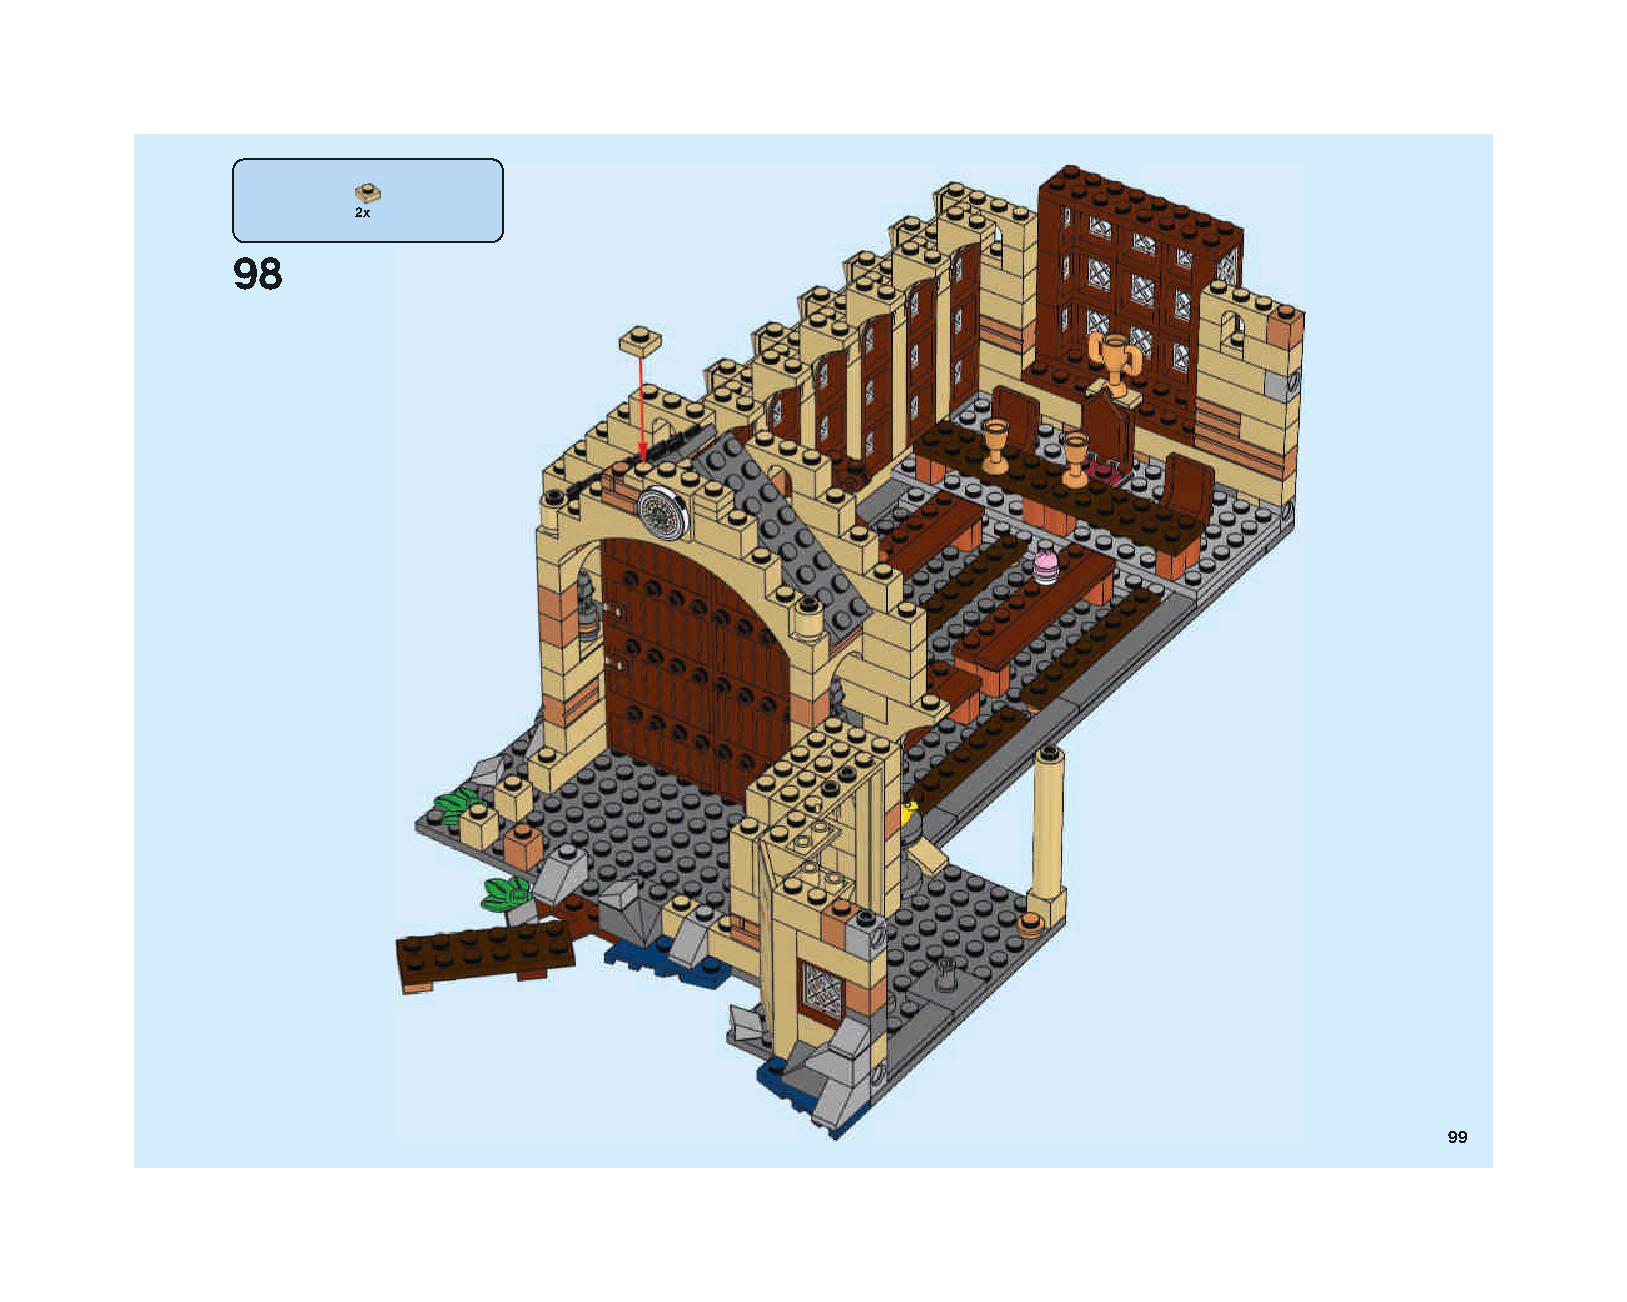 ホグワーツの大広間 75954 レゴの商品情報 レゴの説明書・組立方法 99 page